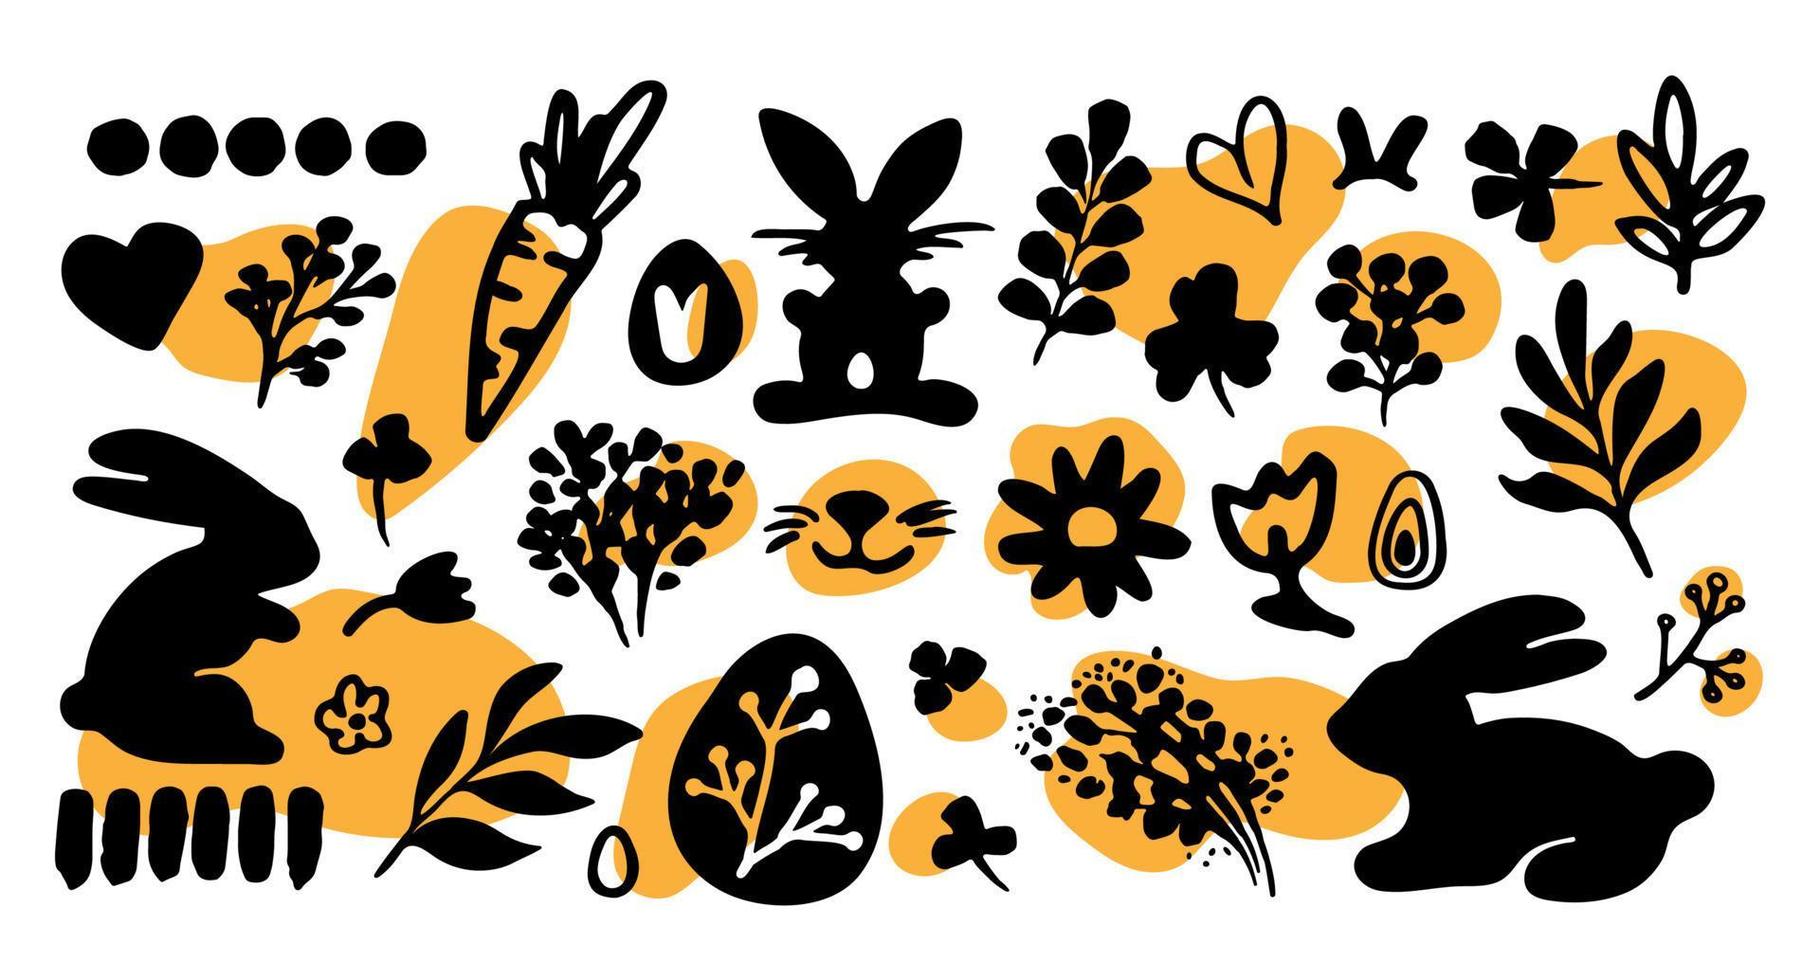 vector Pasen doodle set met schattige konijntjes, kippen, bloemen en eieren. ontwerpelementen en personages in cartoonstijl. vectorillustratie.